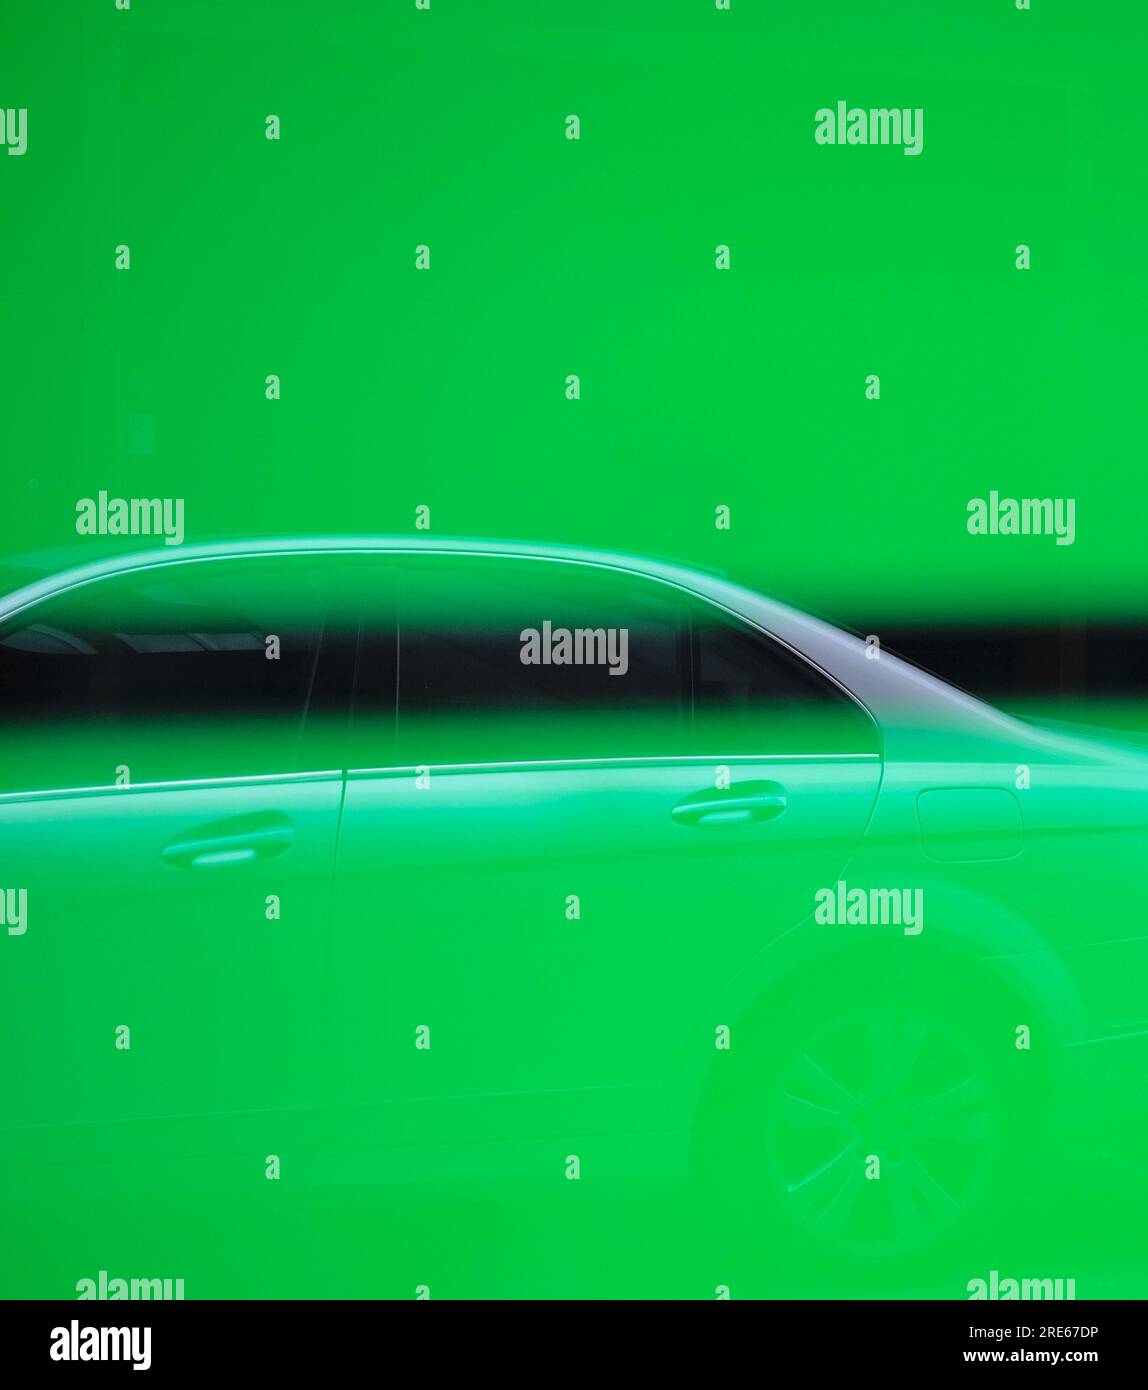 Riflesso di una moderna auto argentata su una superficie in vetro con strisce verdi al neon e immagine astratta da utilizzare come elemento grafico di design. Foto Stock